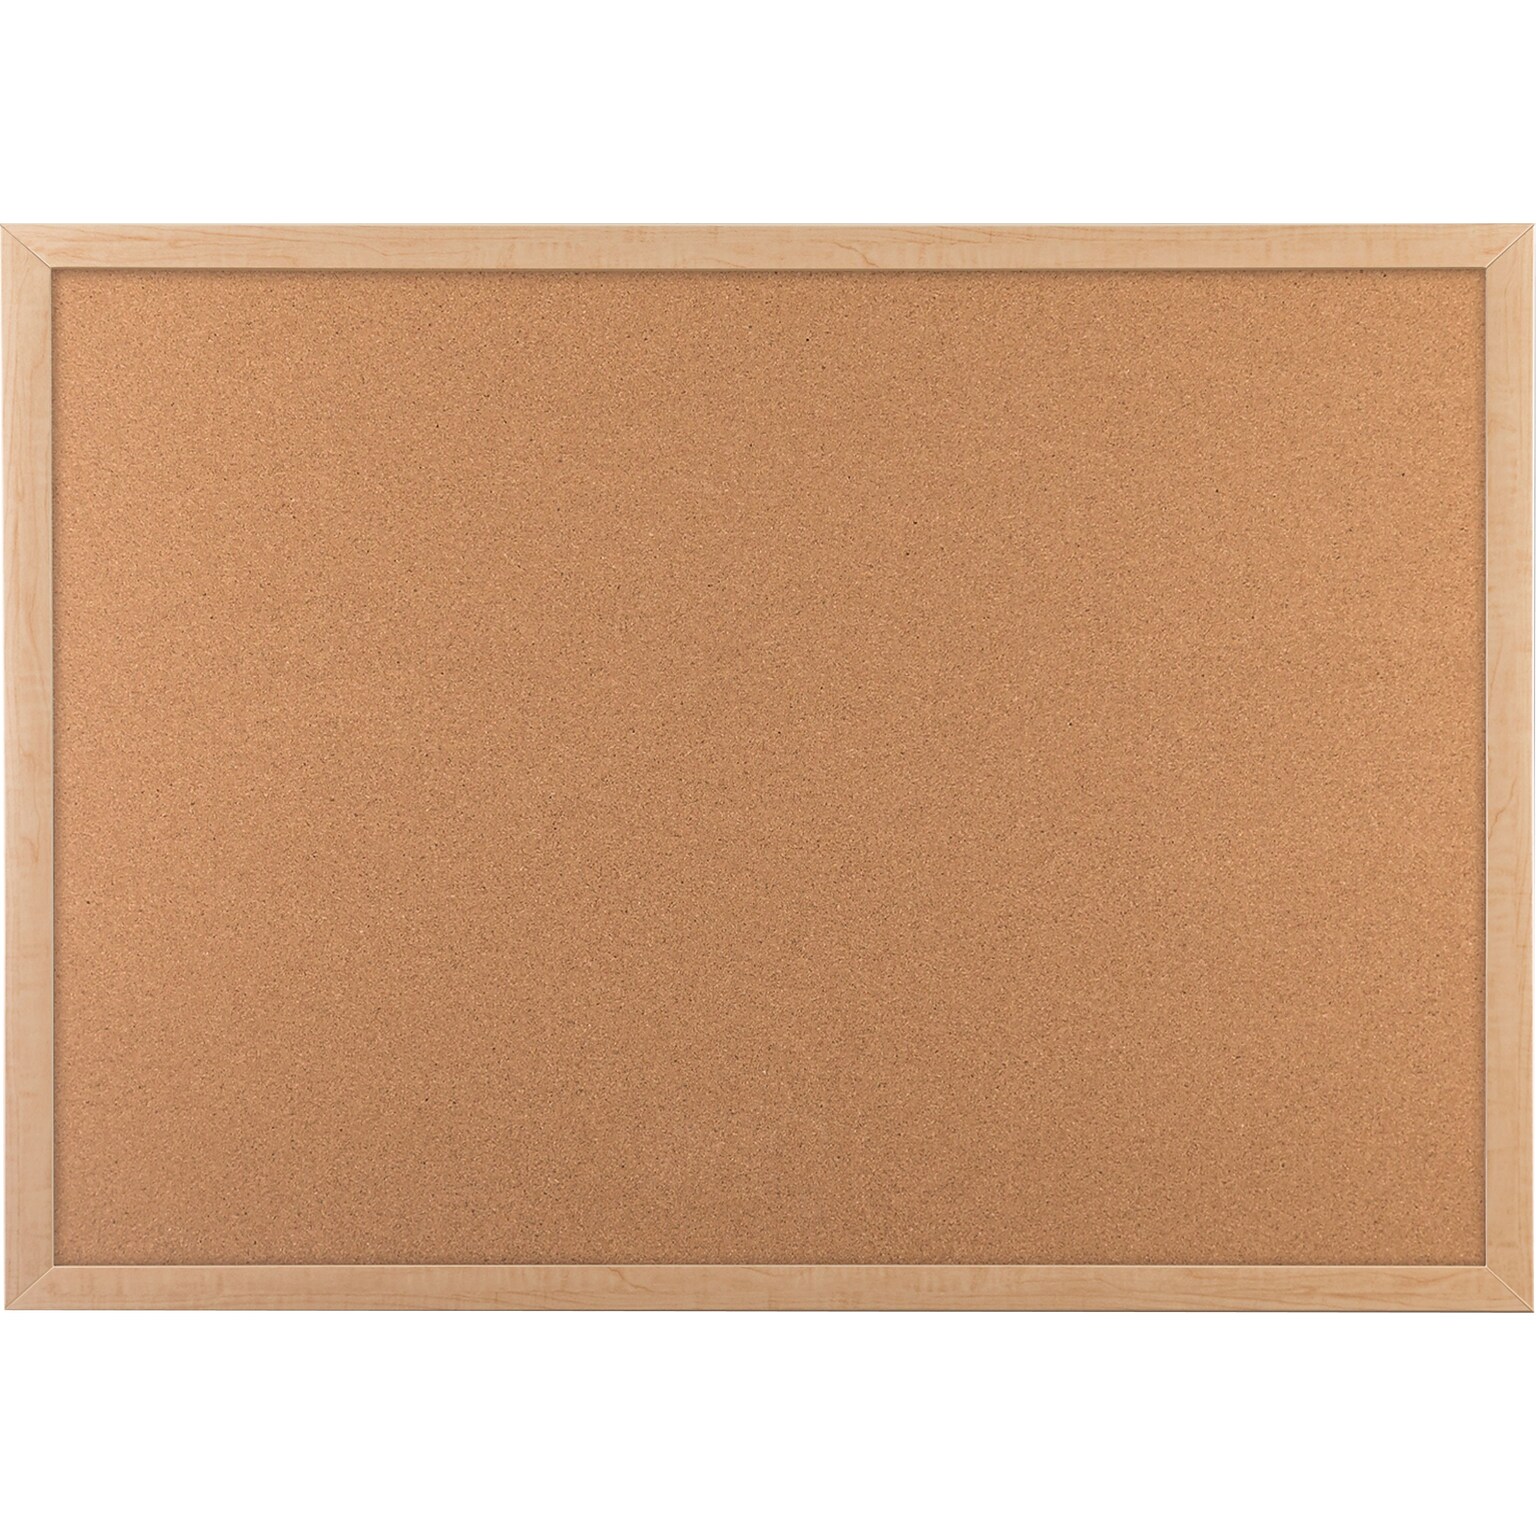 U Brands Cork Bulletin Board, Oak Finish Frame, 23 x 17 (265U00-01)